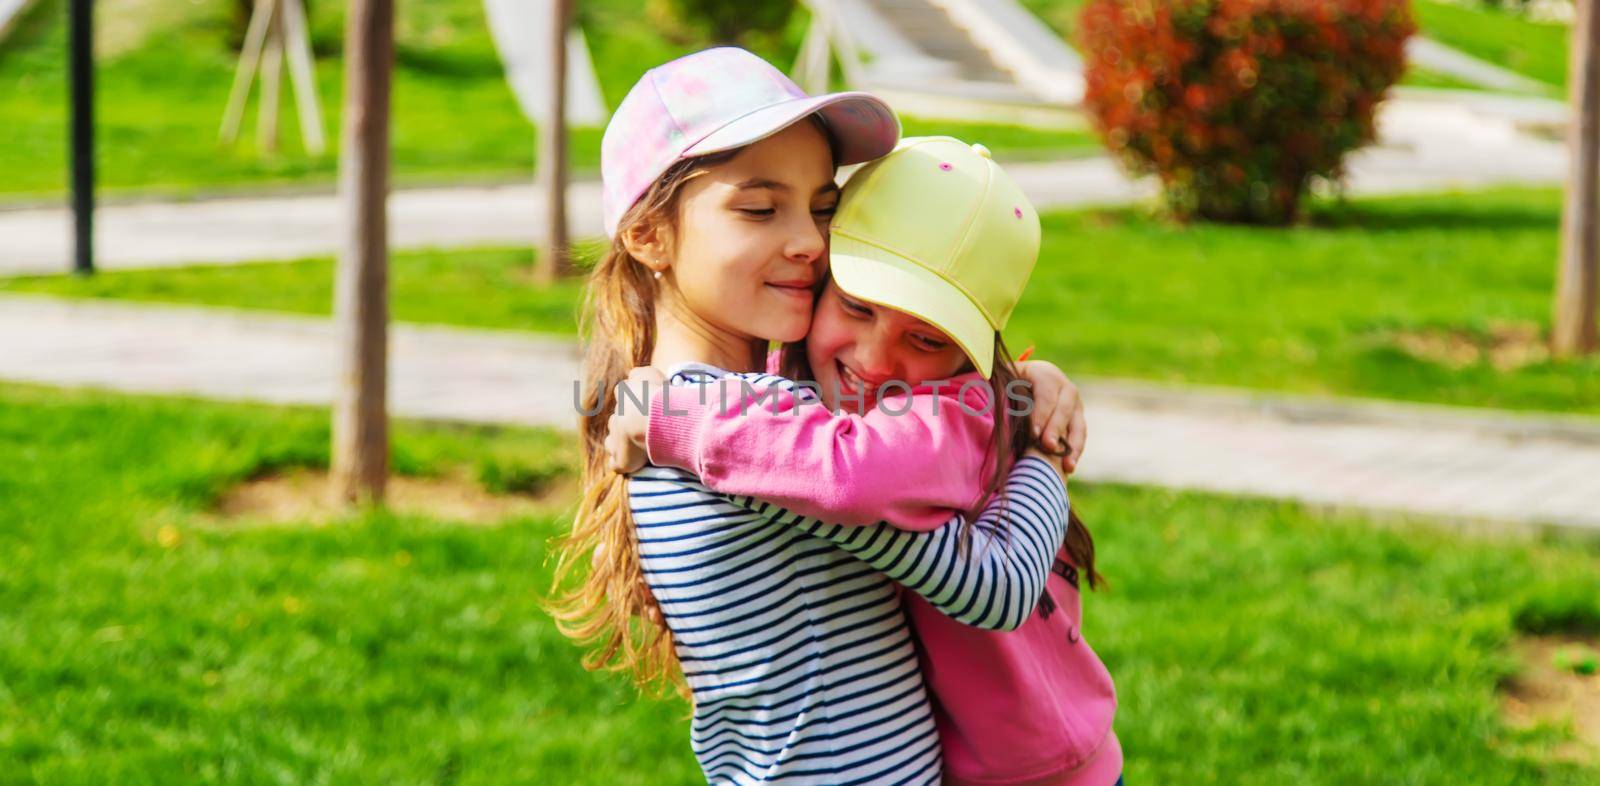 girlfriends children hugging in the park.selective focus.kids